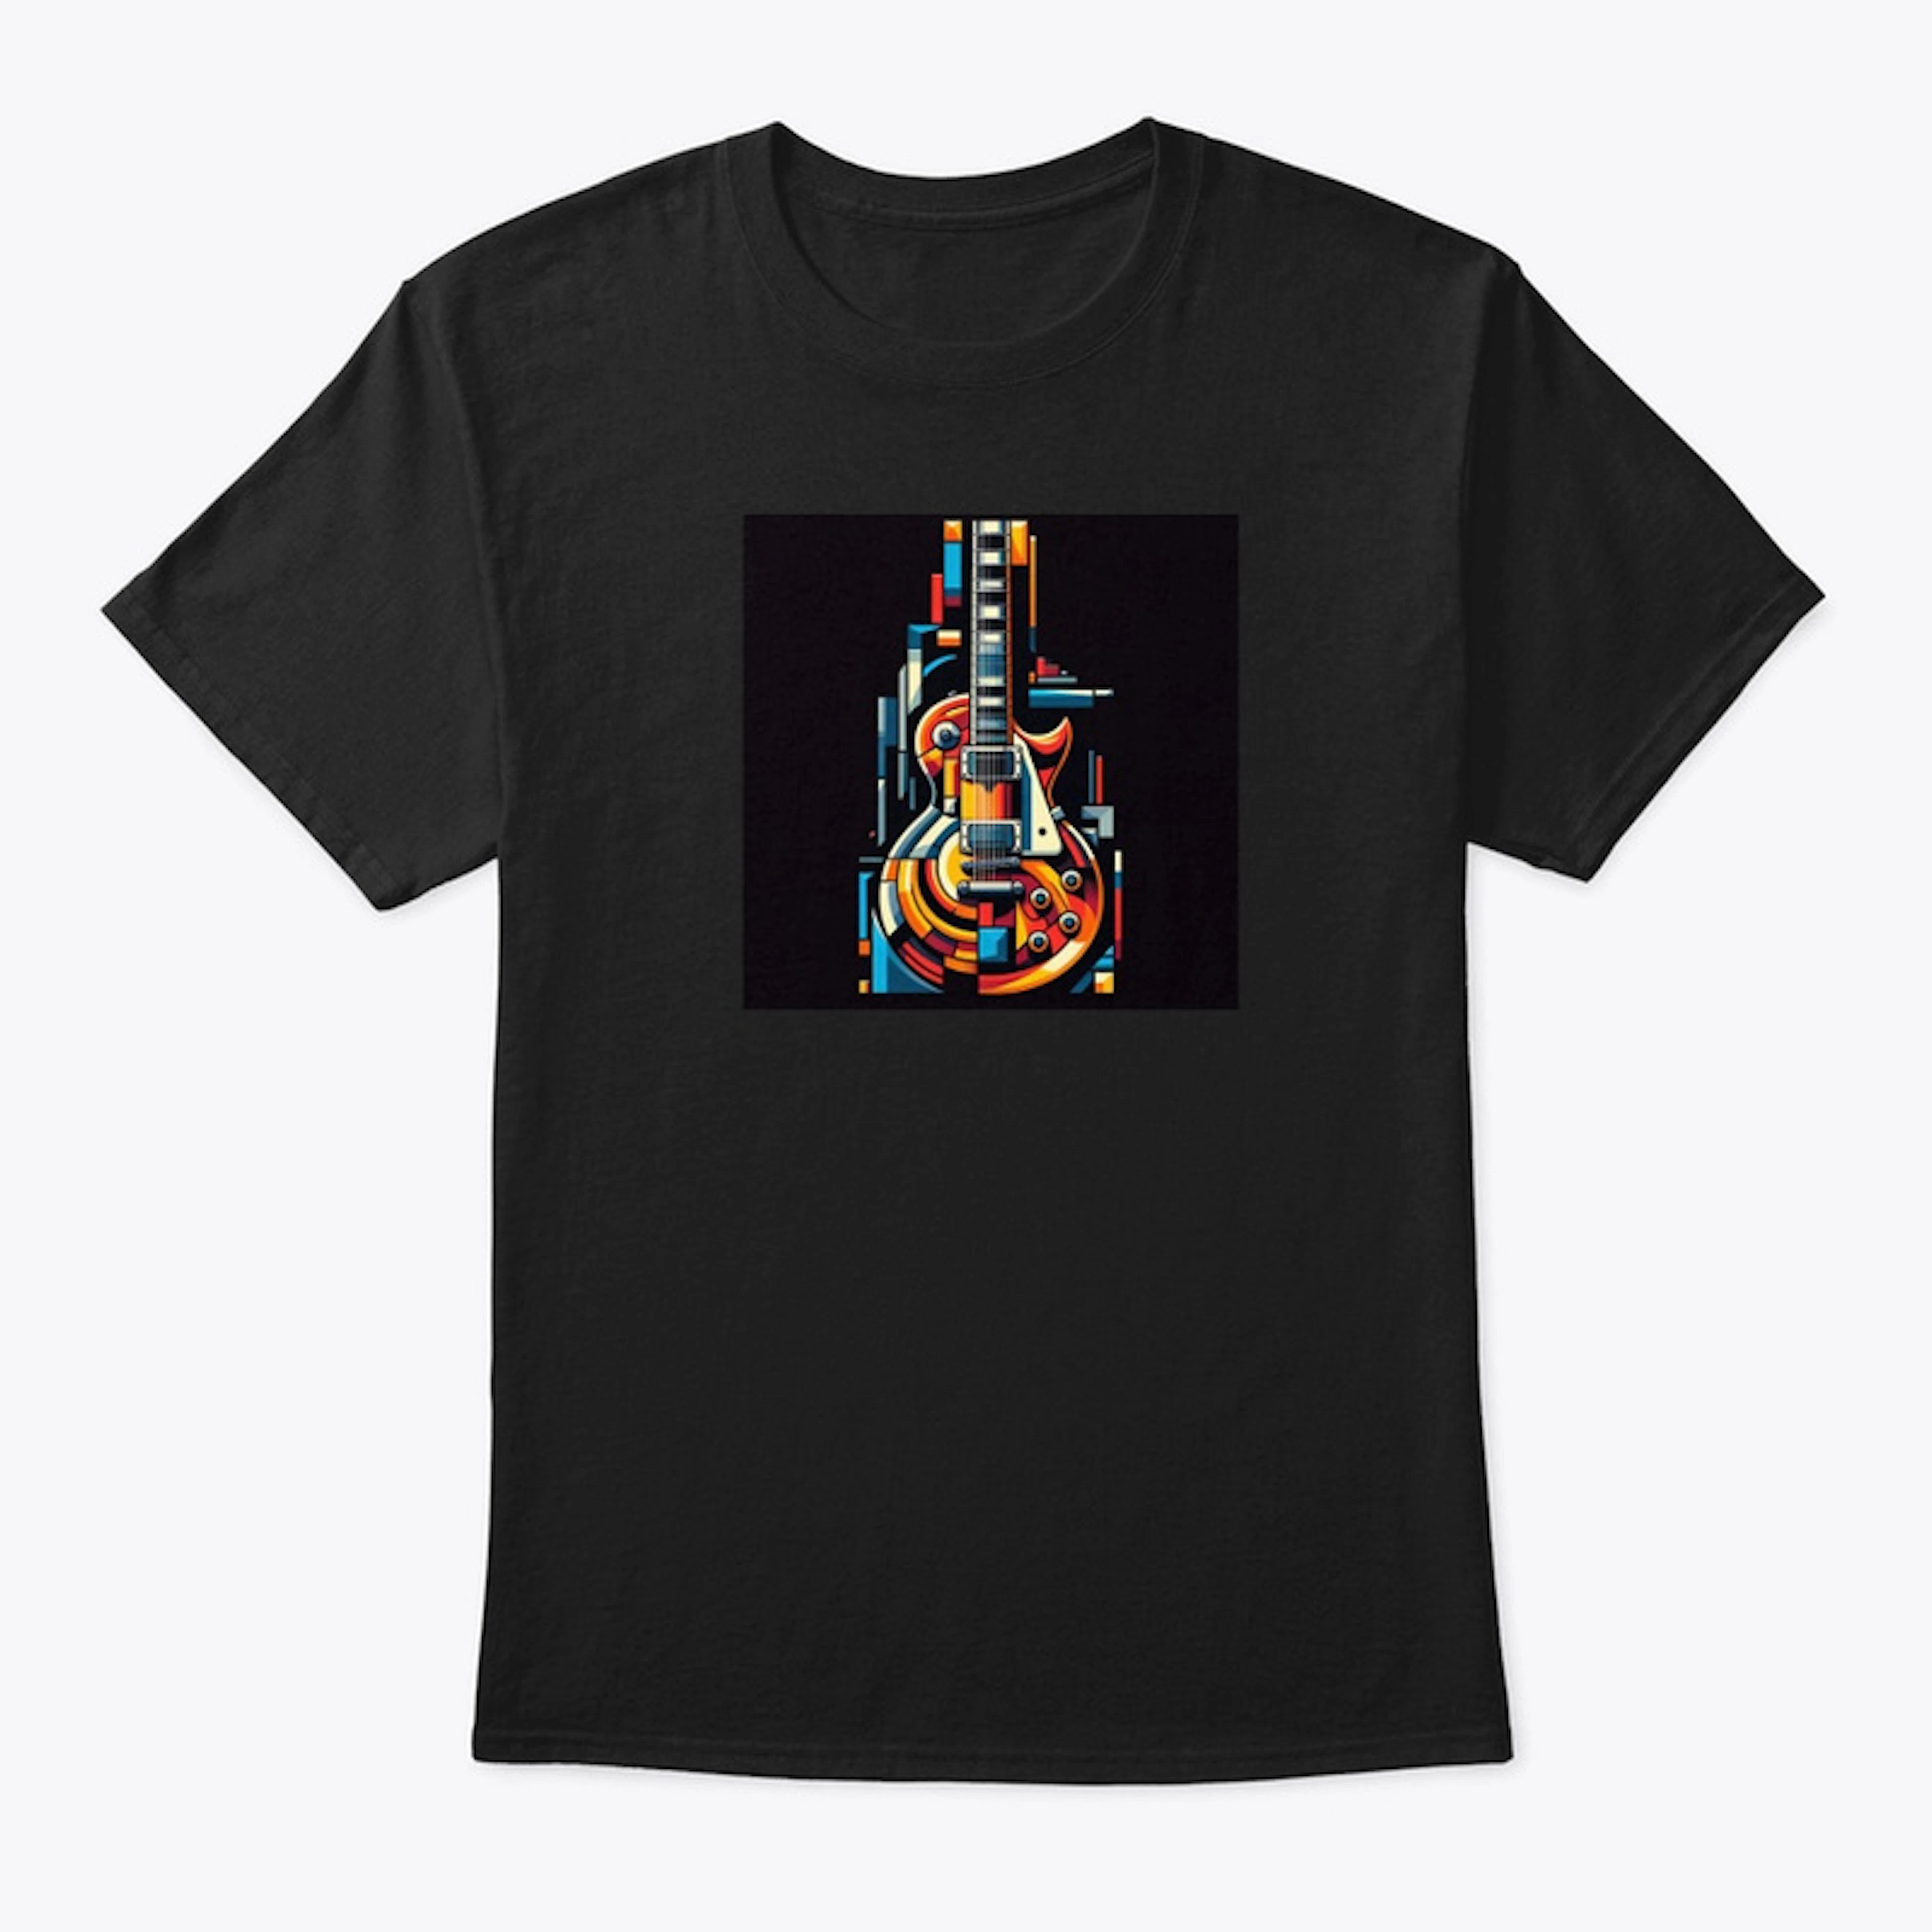 Cubist Les Paul electric guitar